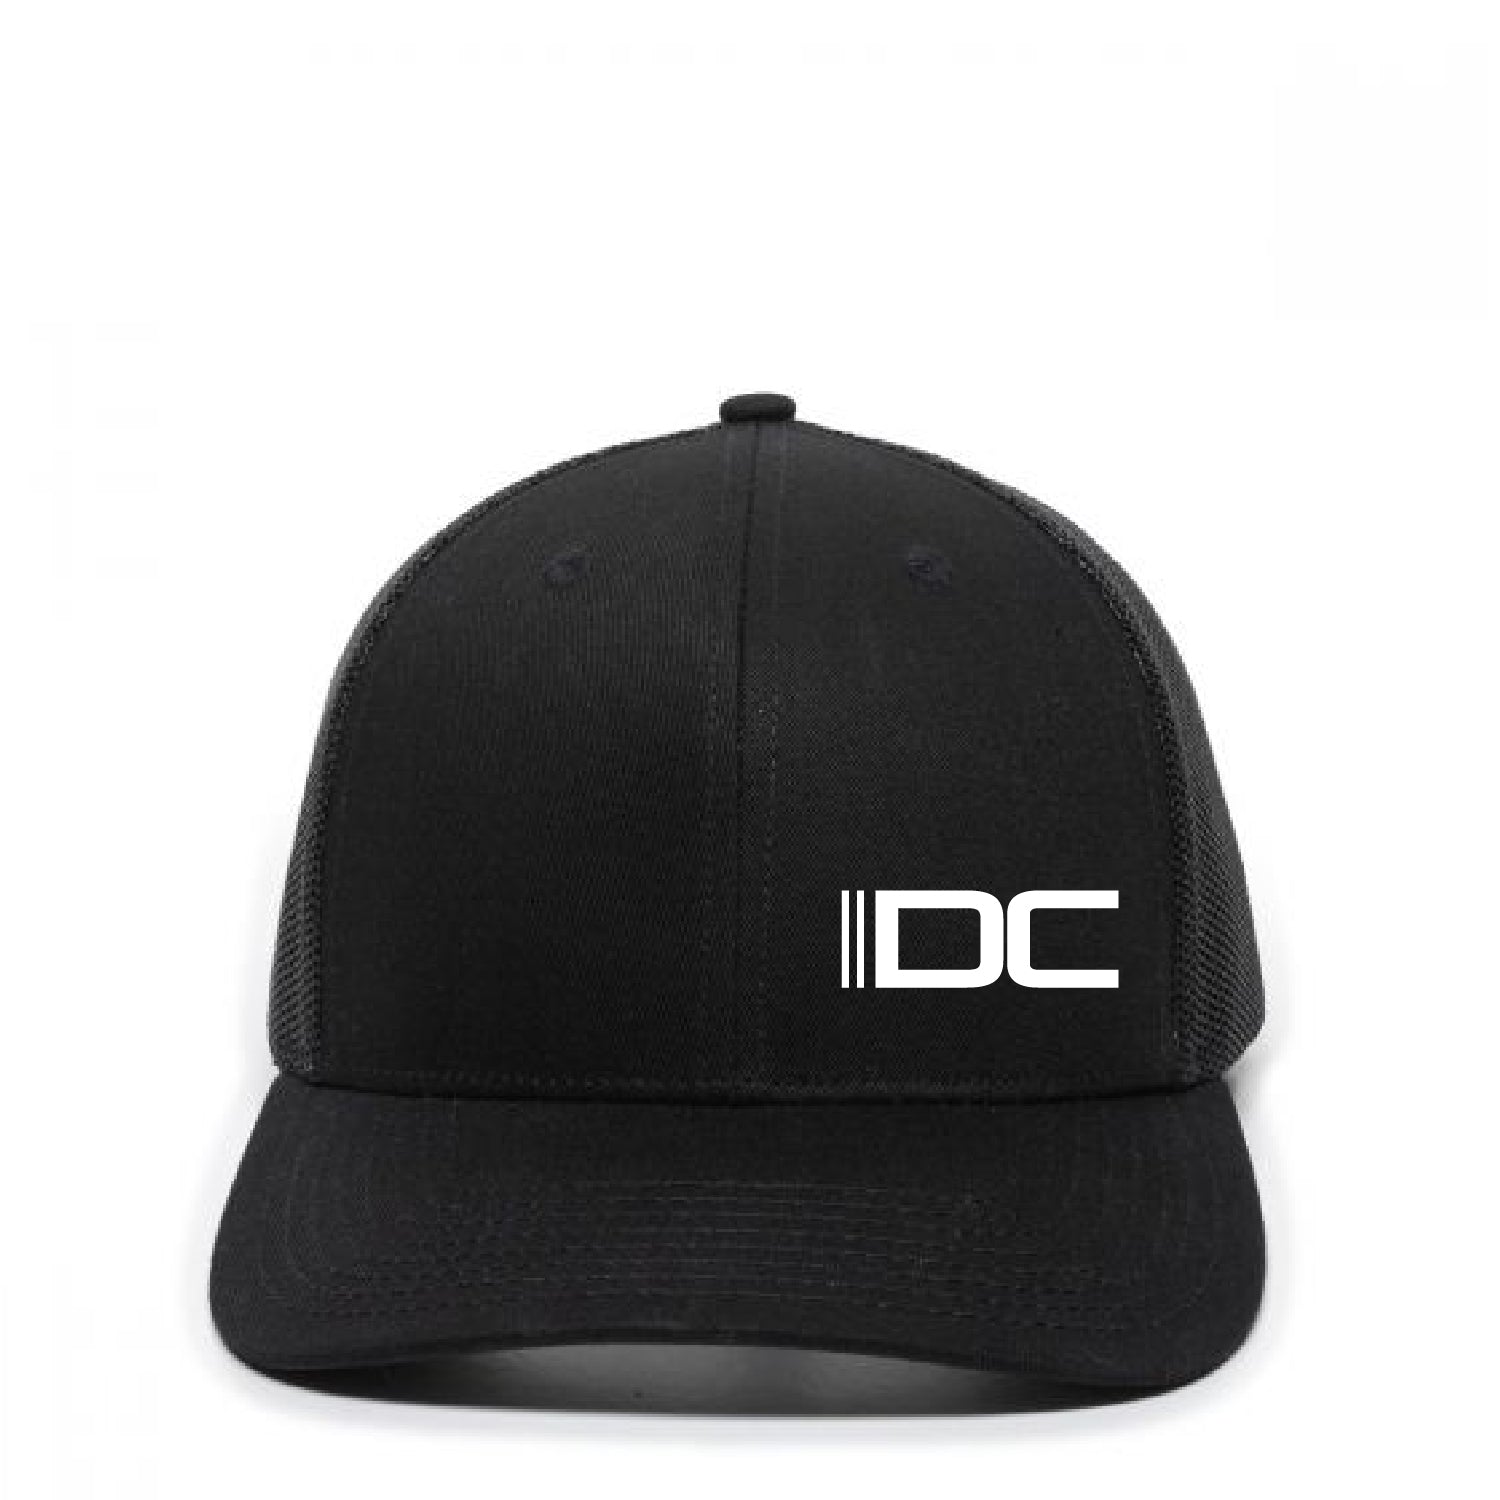 IDC Premium Trucker Hat - DSP On Demand